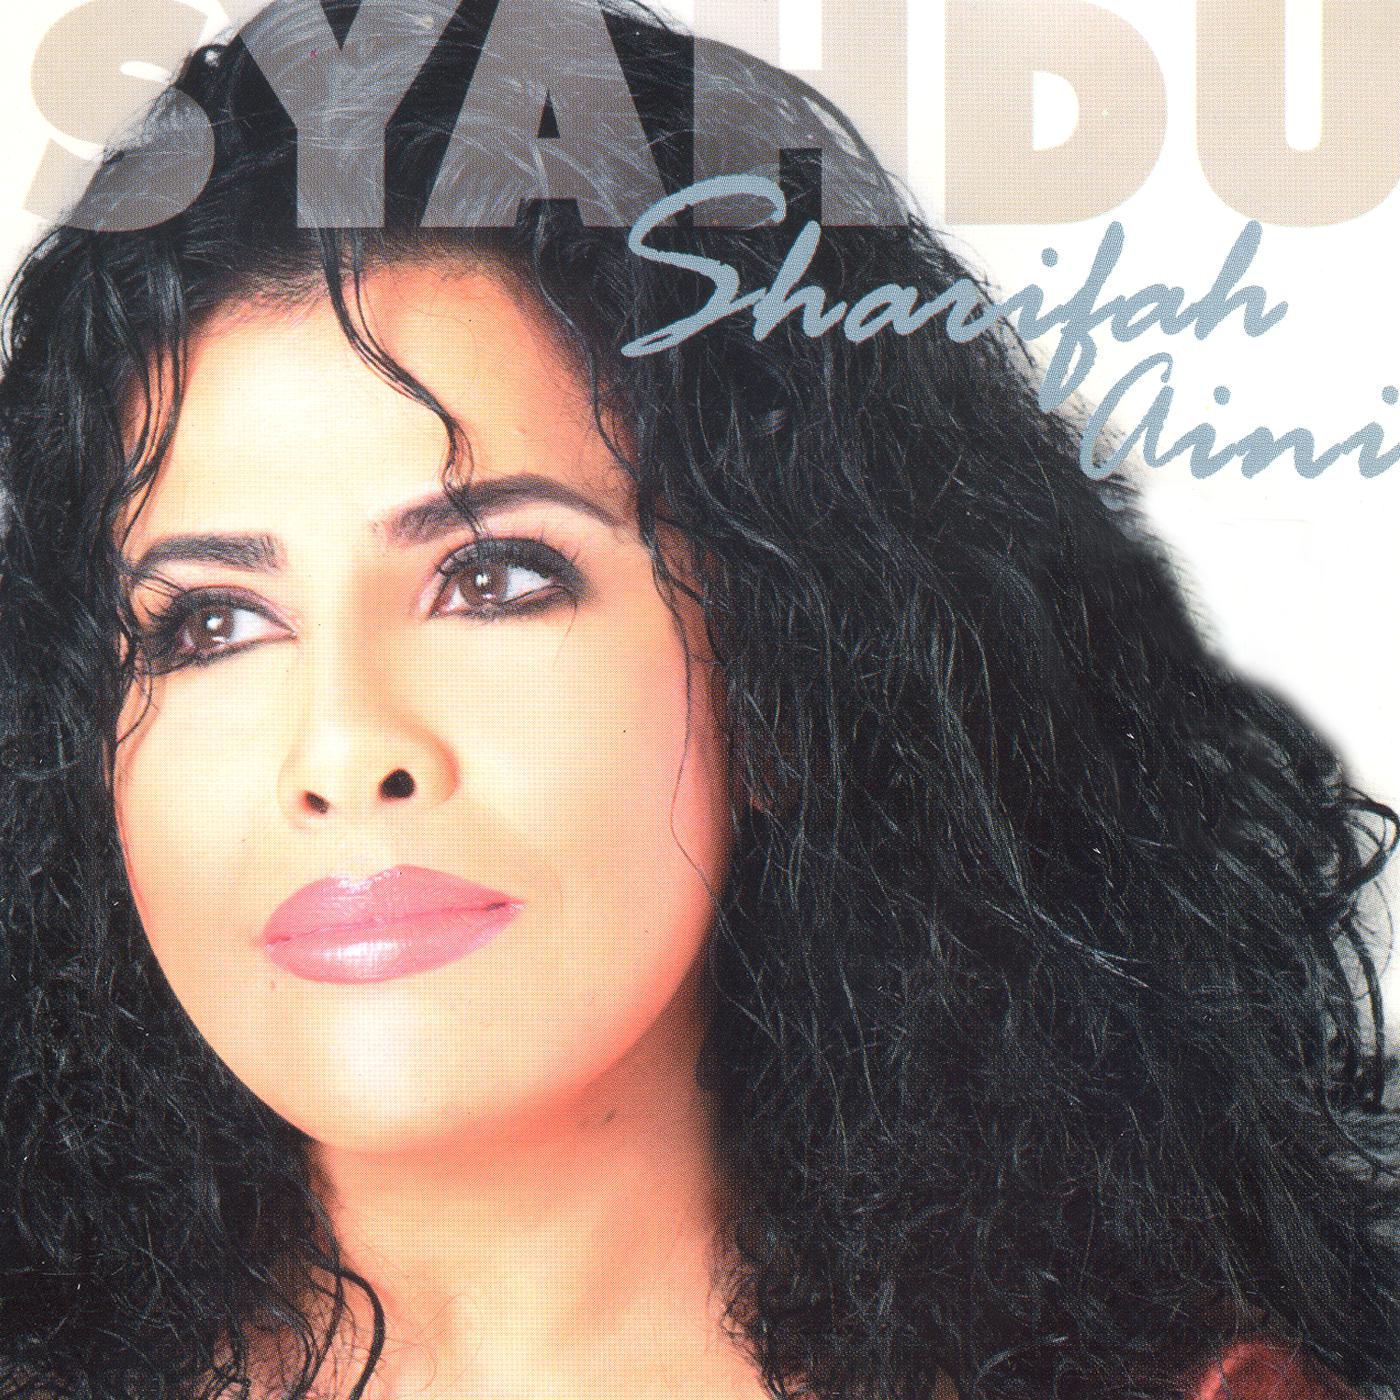 Постер альбома Syahdu